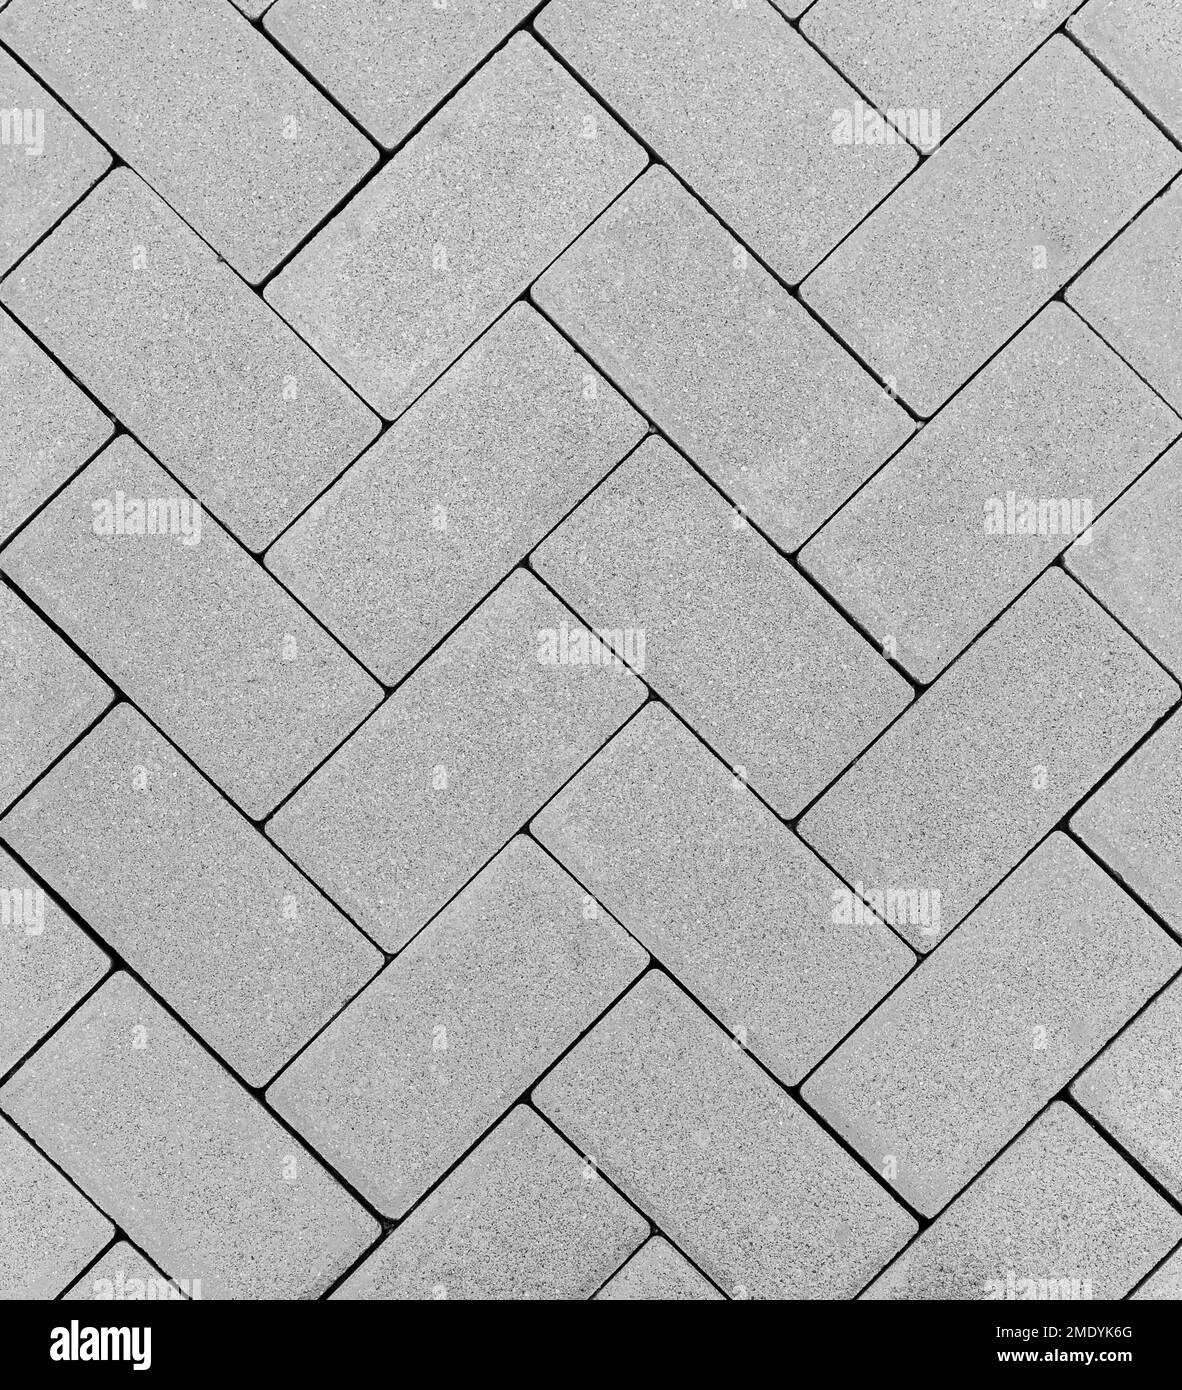 Draufsicht auf einen grauen Backsteinboden im Freien in einem Zickzackmuster Stockfoto